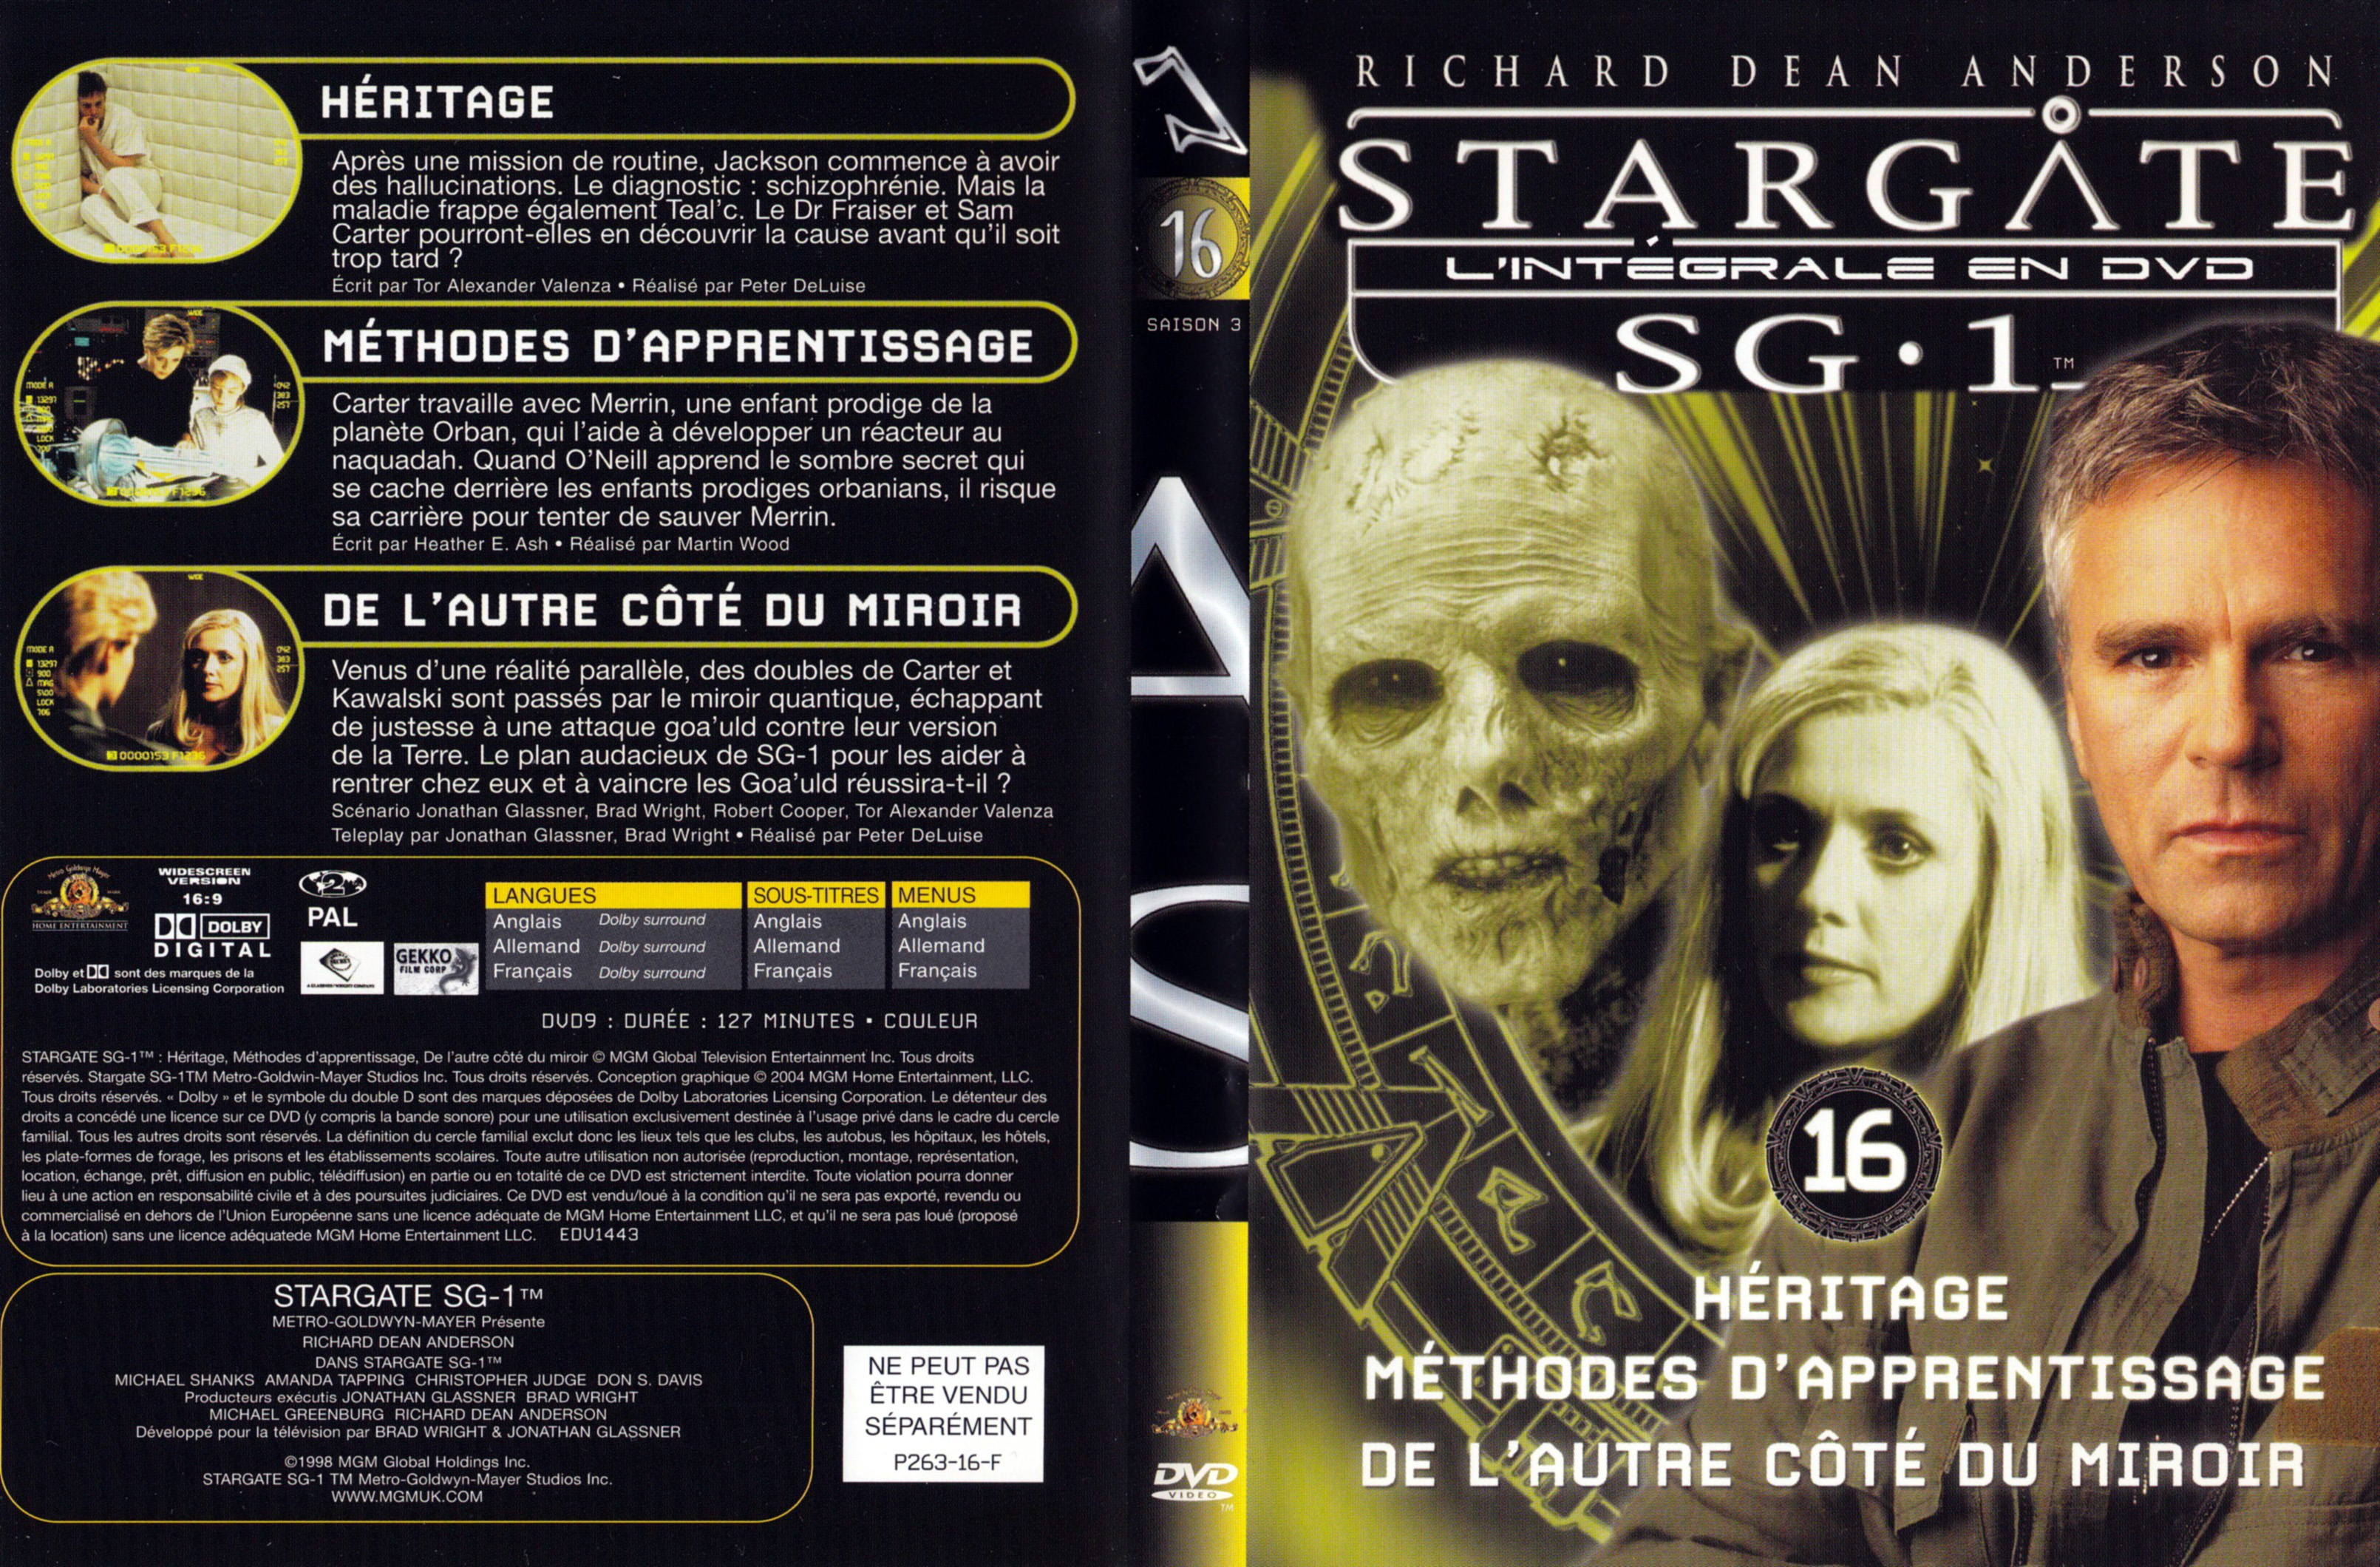 Jaquette DVD Stargate SG1 Intgrale Saison 3 vol 16